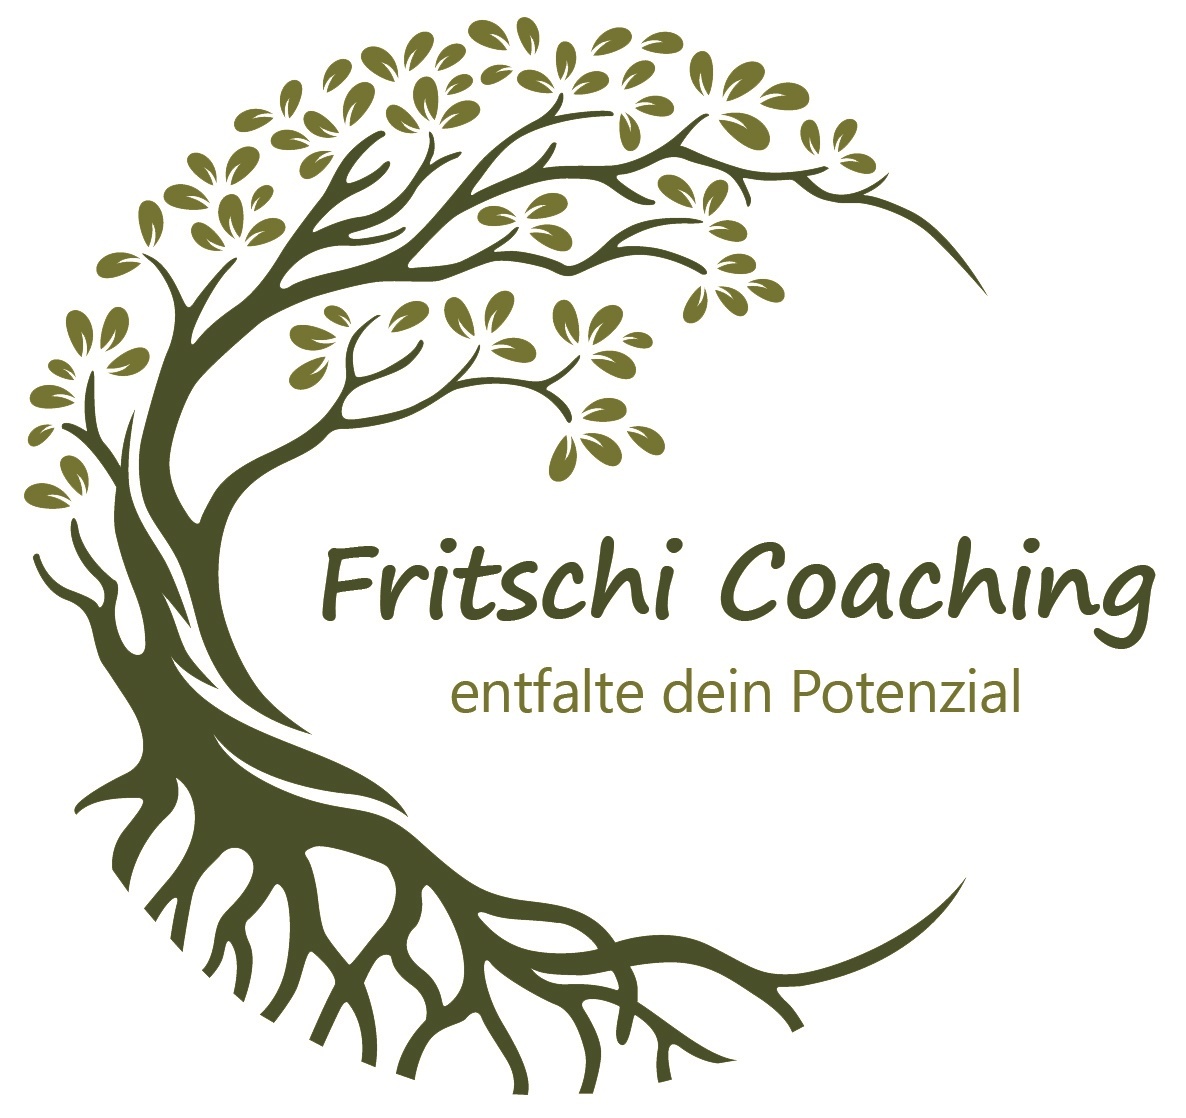 Fritschi Coaching